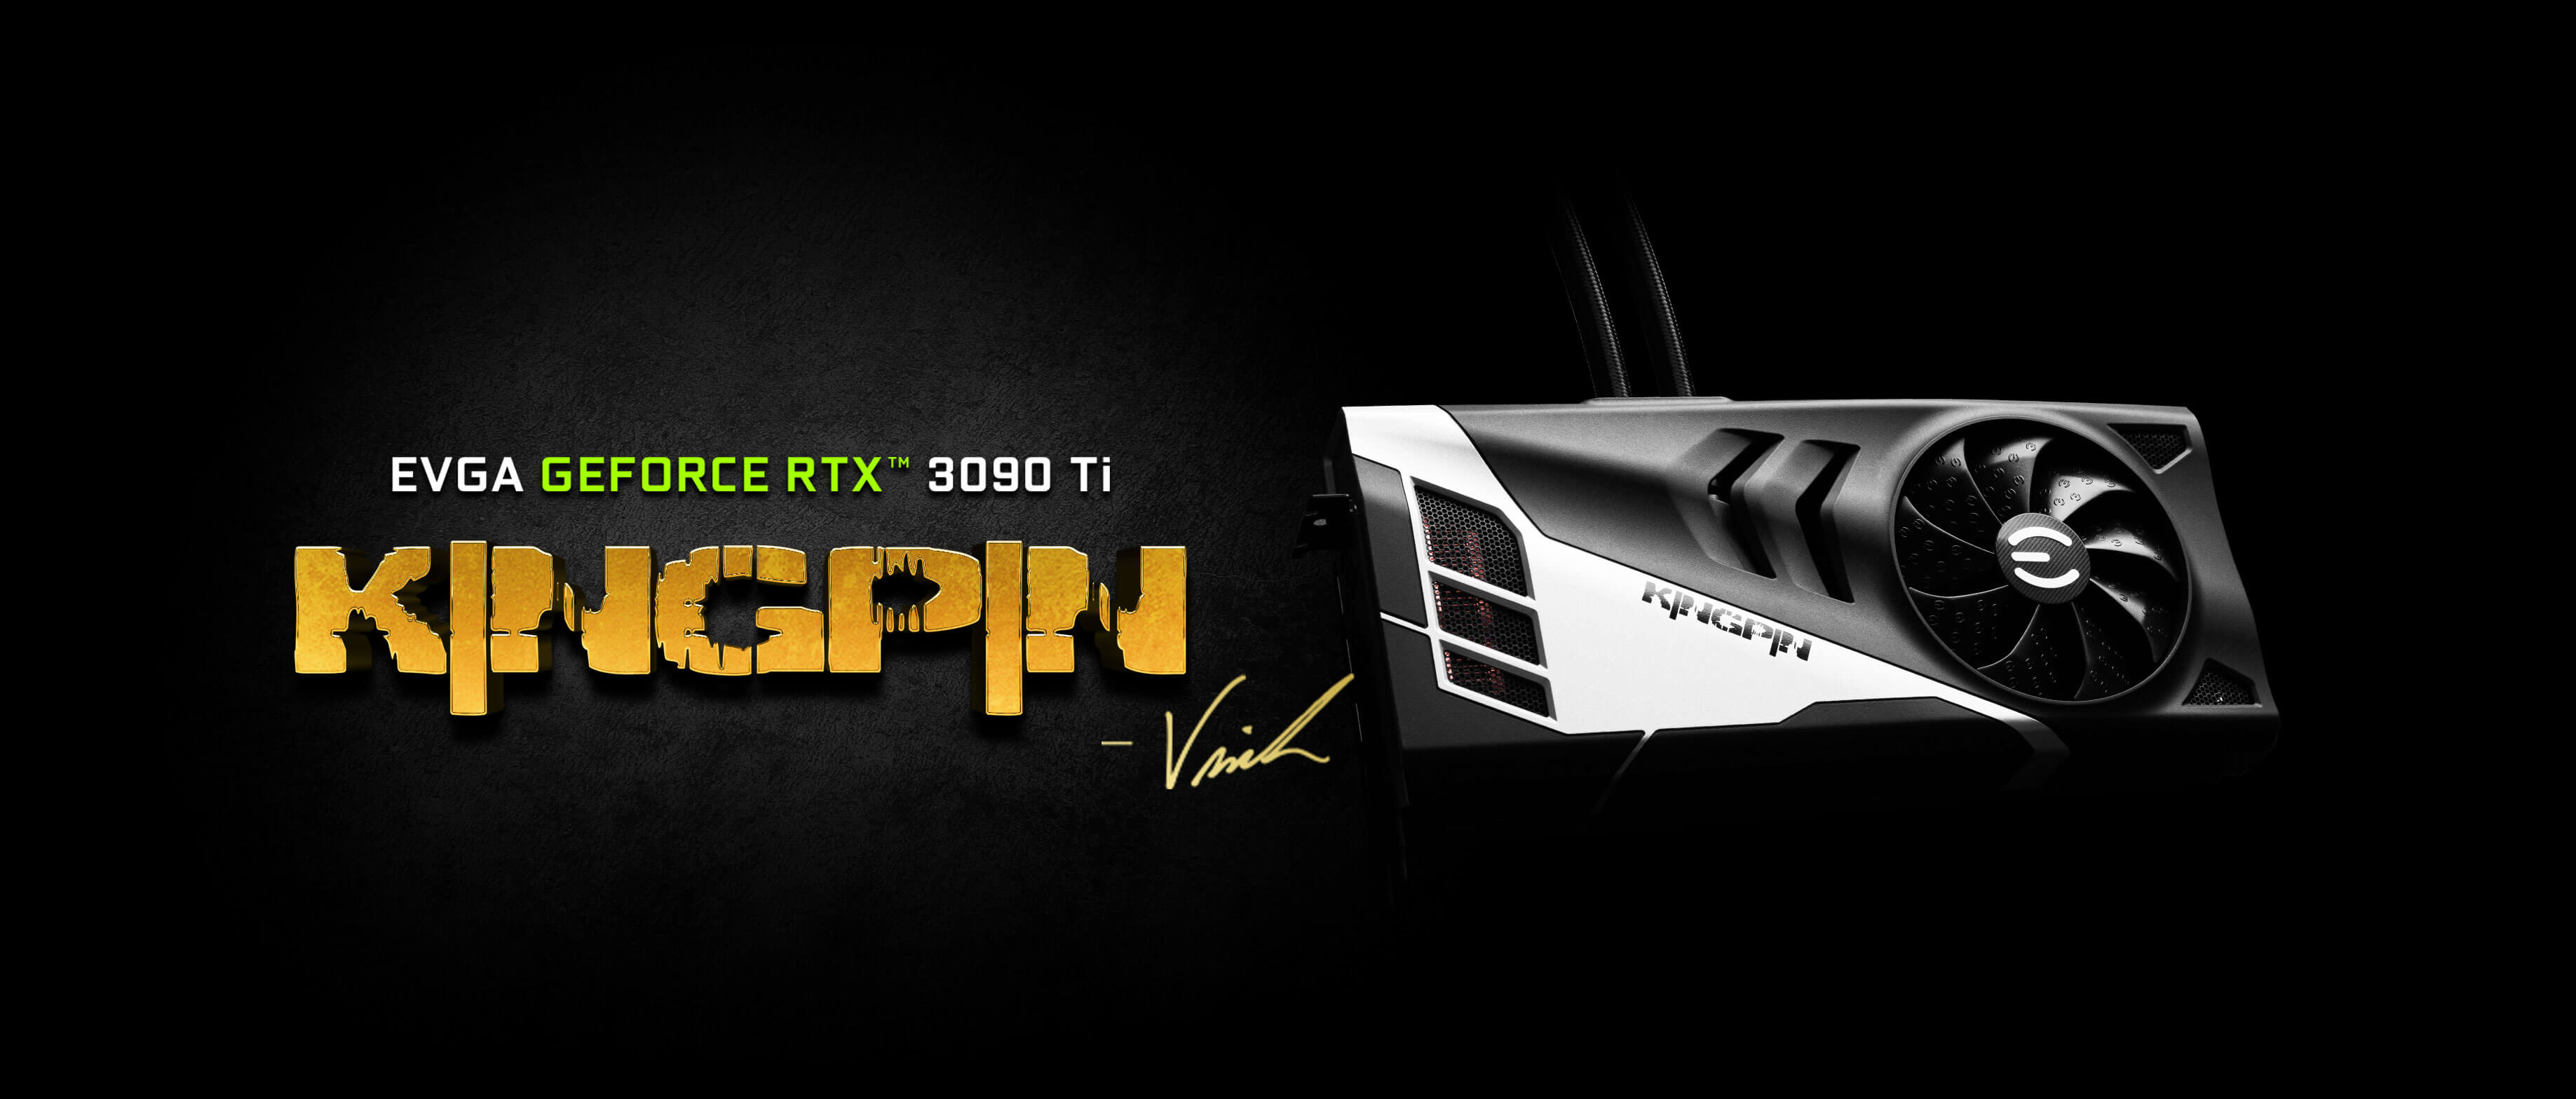 EVGA GeForce RTX 3090 Ti Kingpin